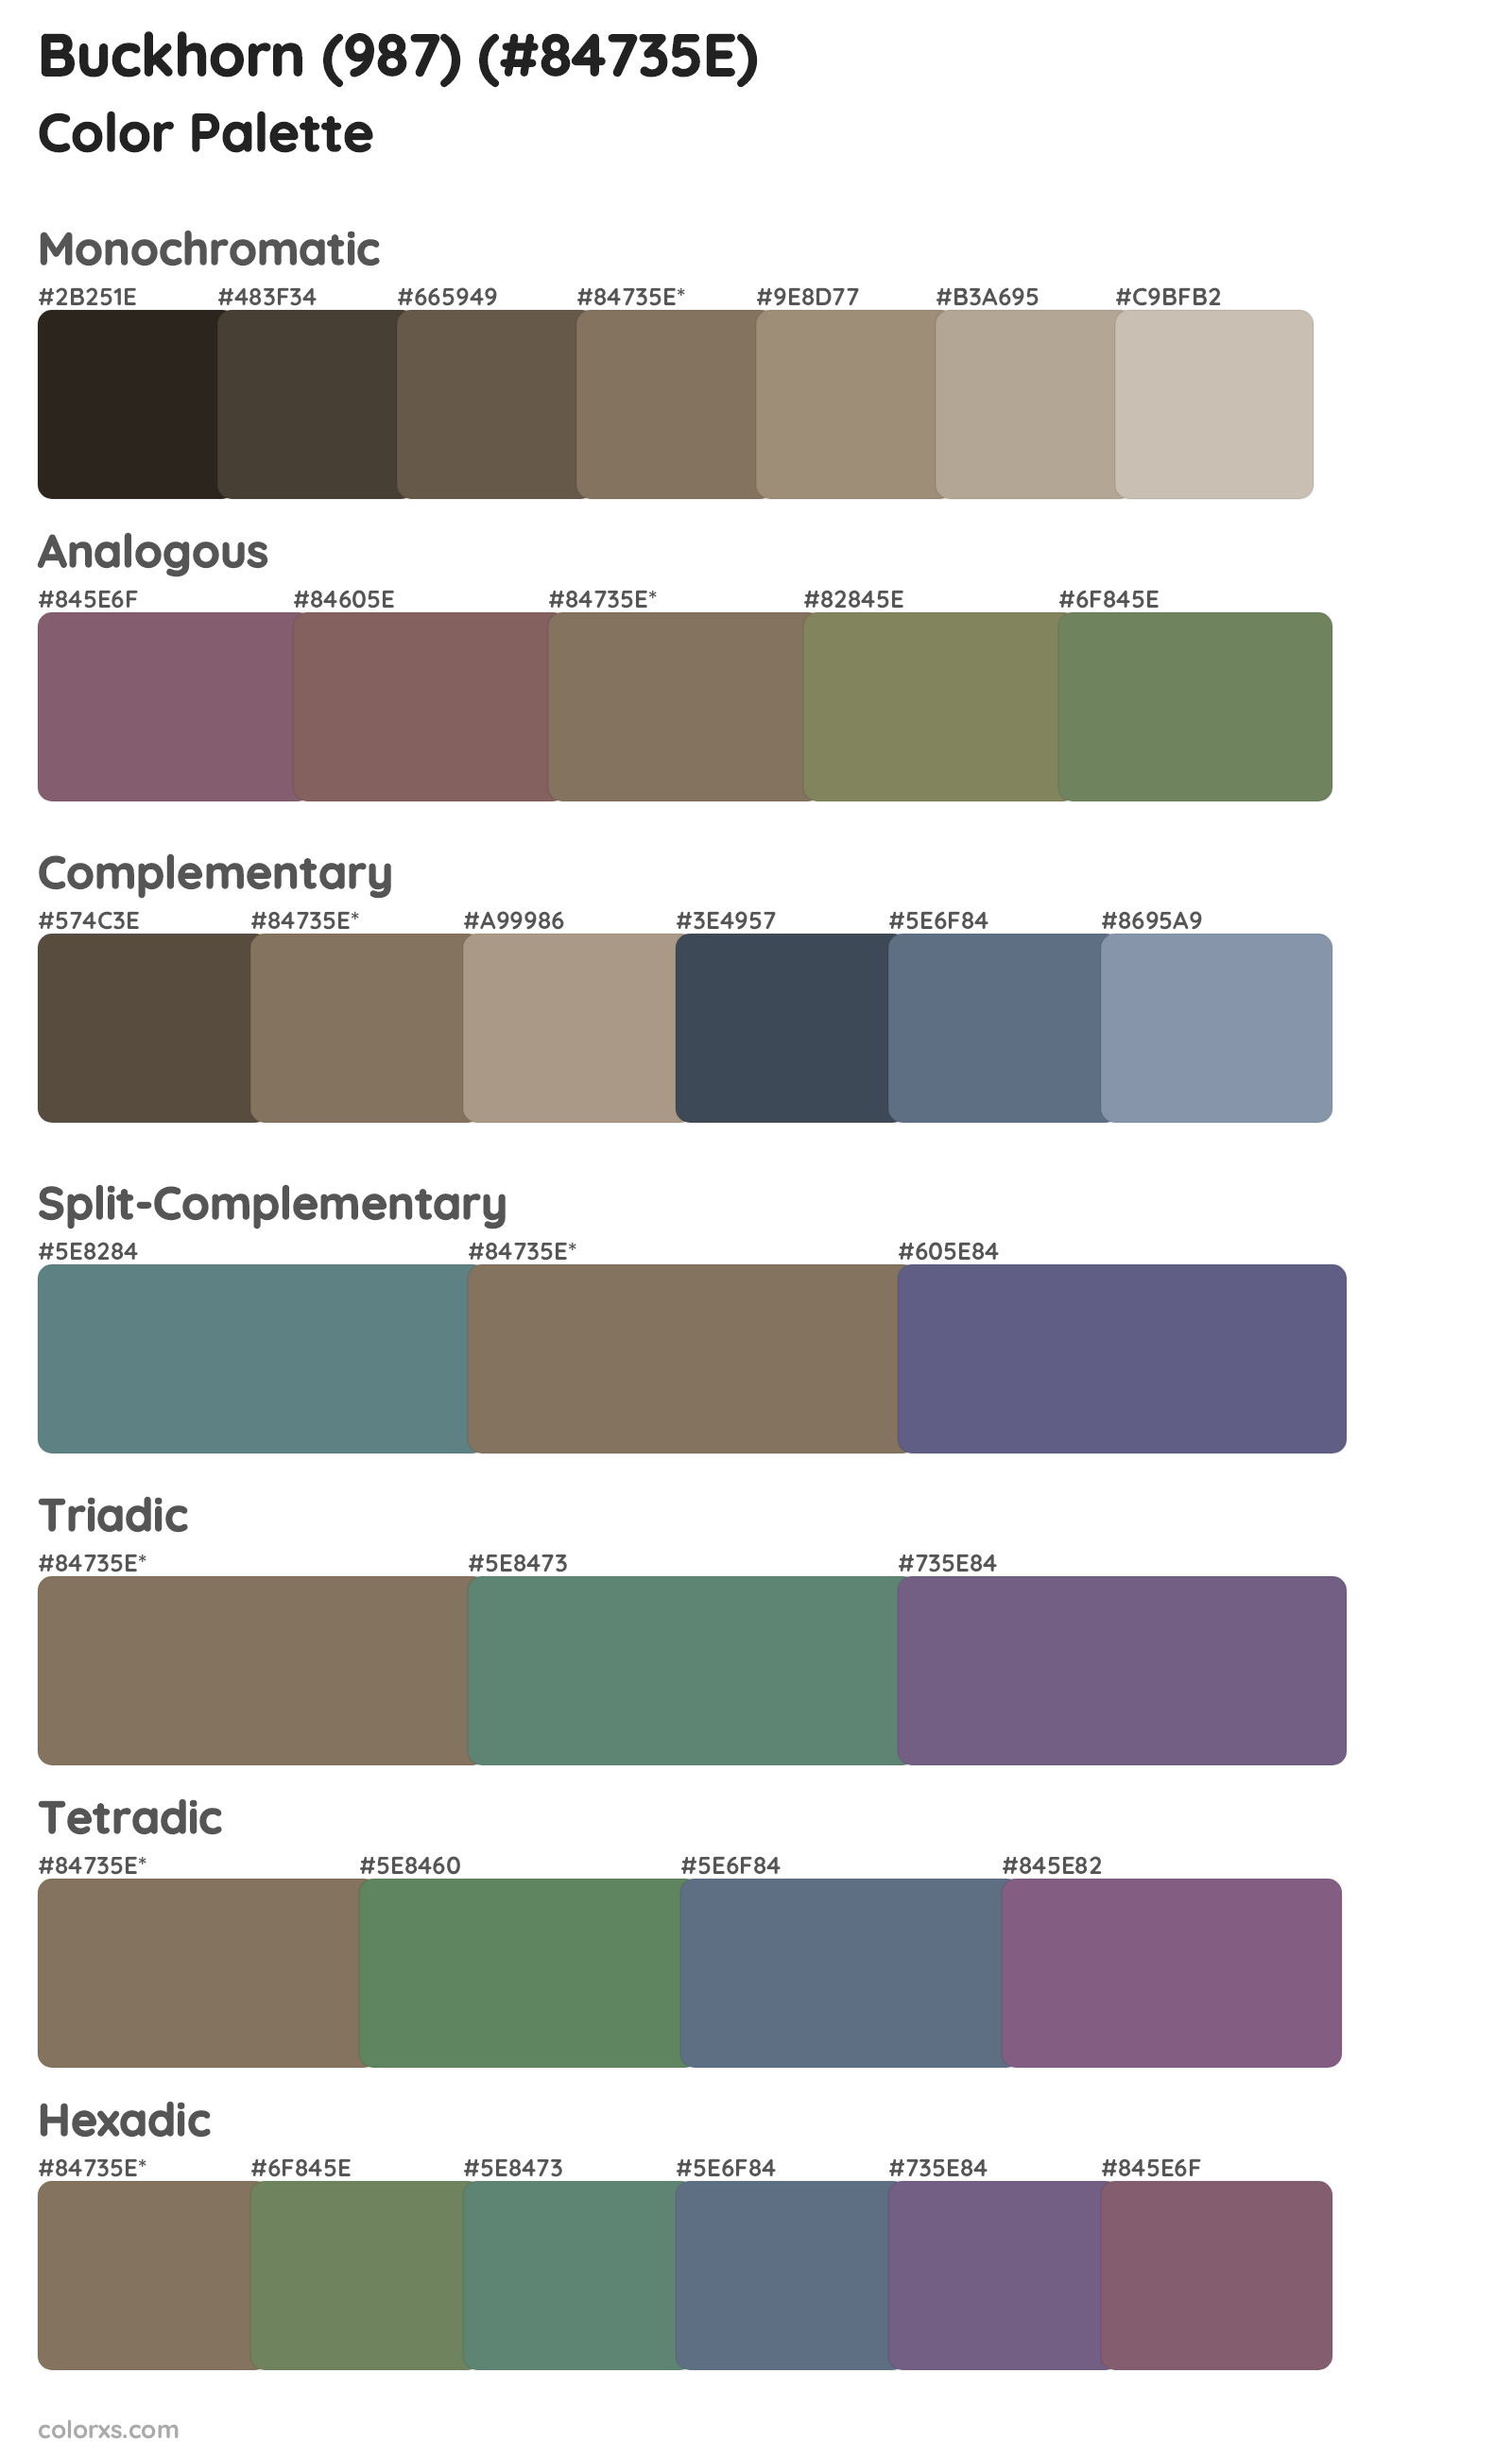 Buckhorn (987) Color Scheme Palettes